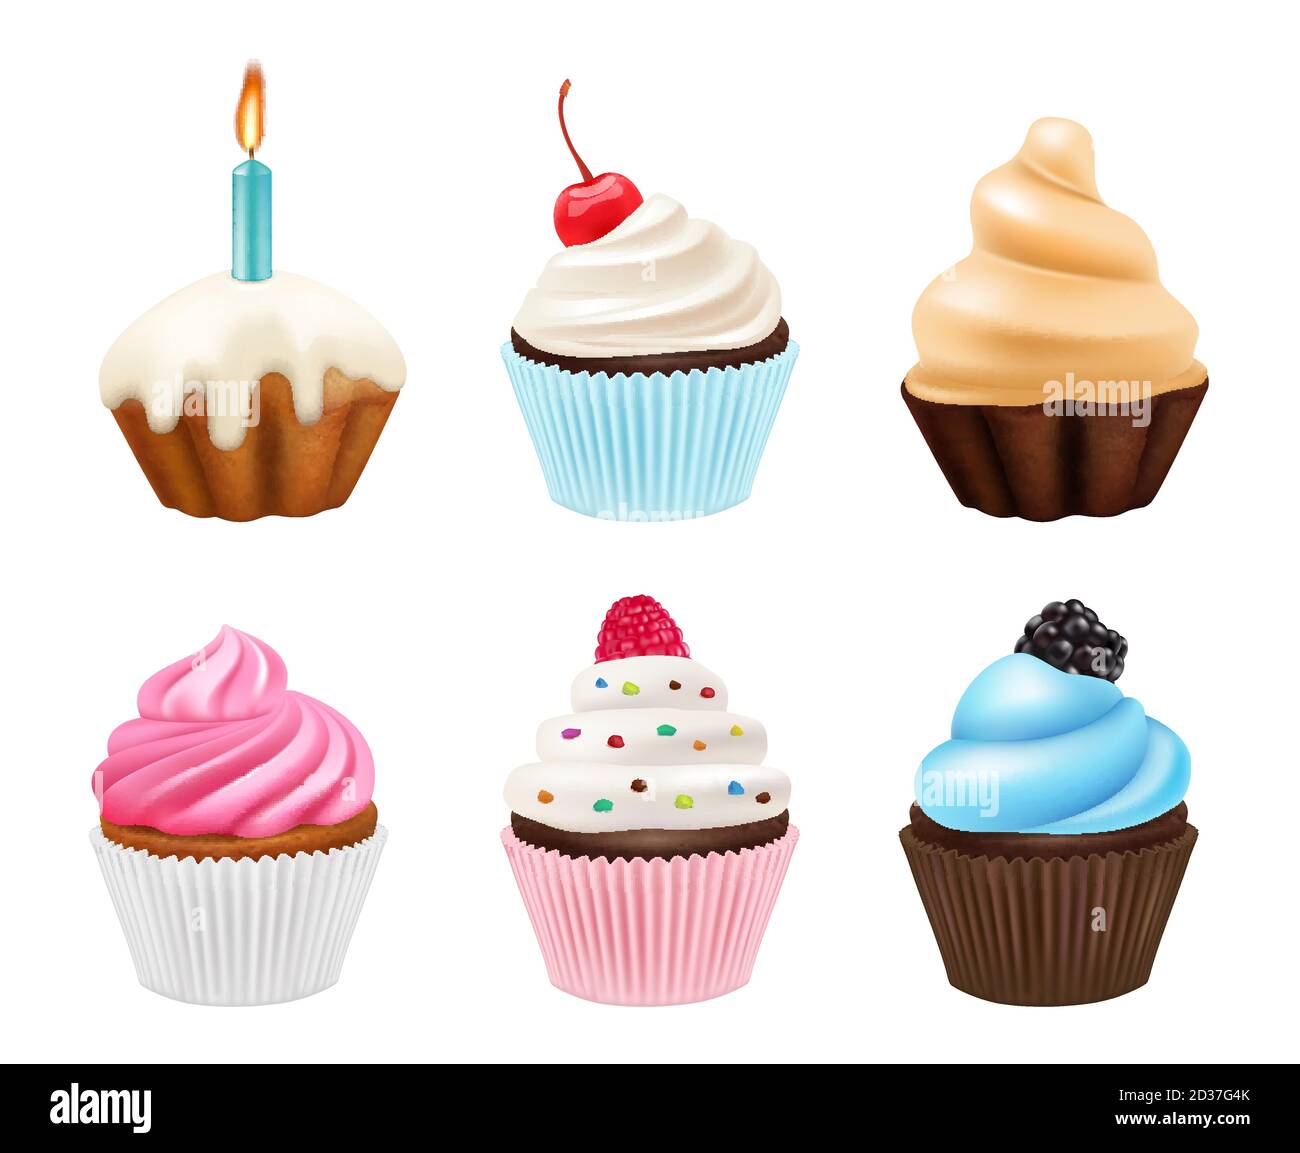 Cupcakes Desserts. Süßigkeiten Muffins mit Sahne und Schokolade Kuchen Vektor realistische Bilder Sammlung Stock Vektor